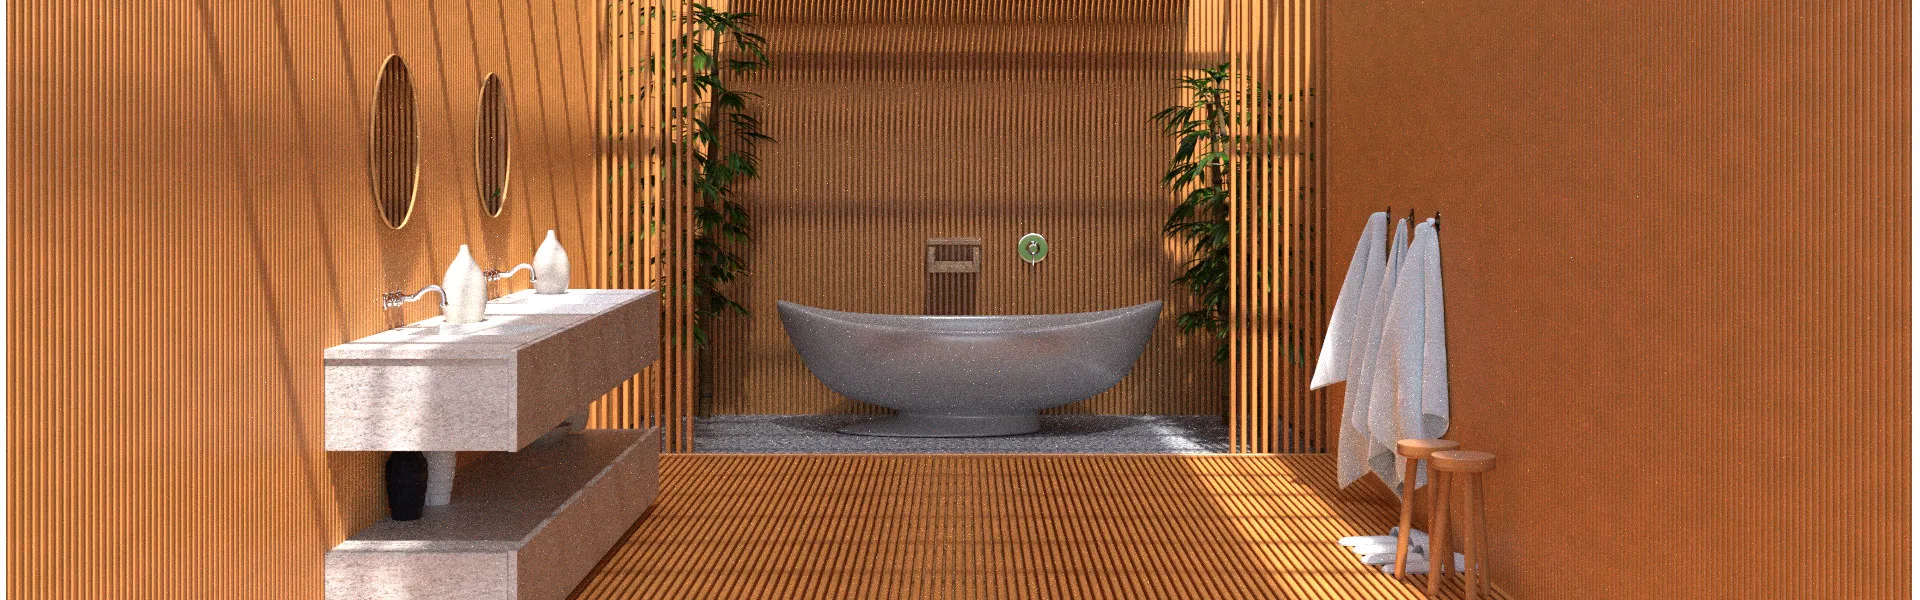 Дизайн ванной комнаты с пластиковыми панелями